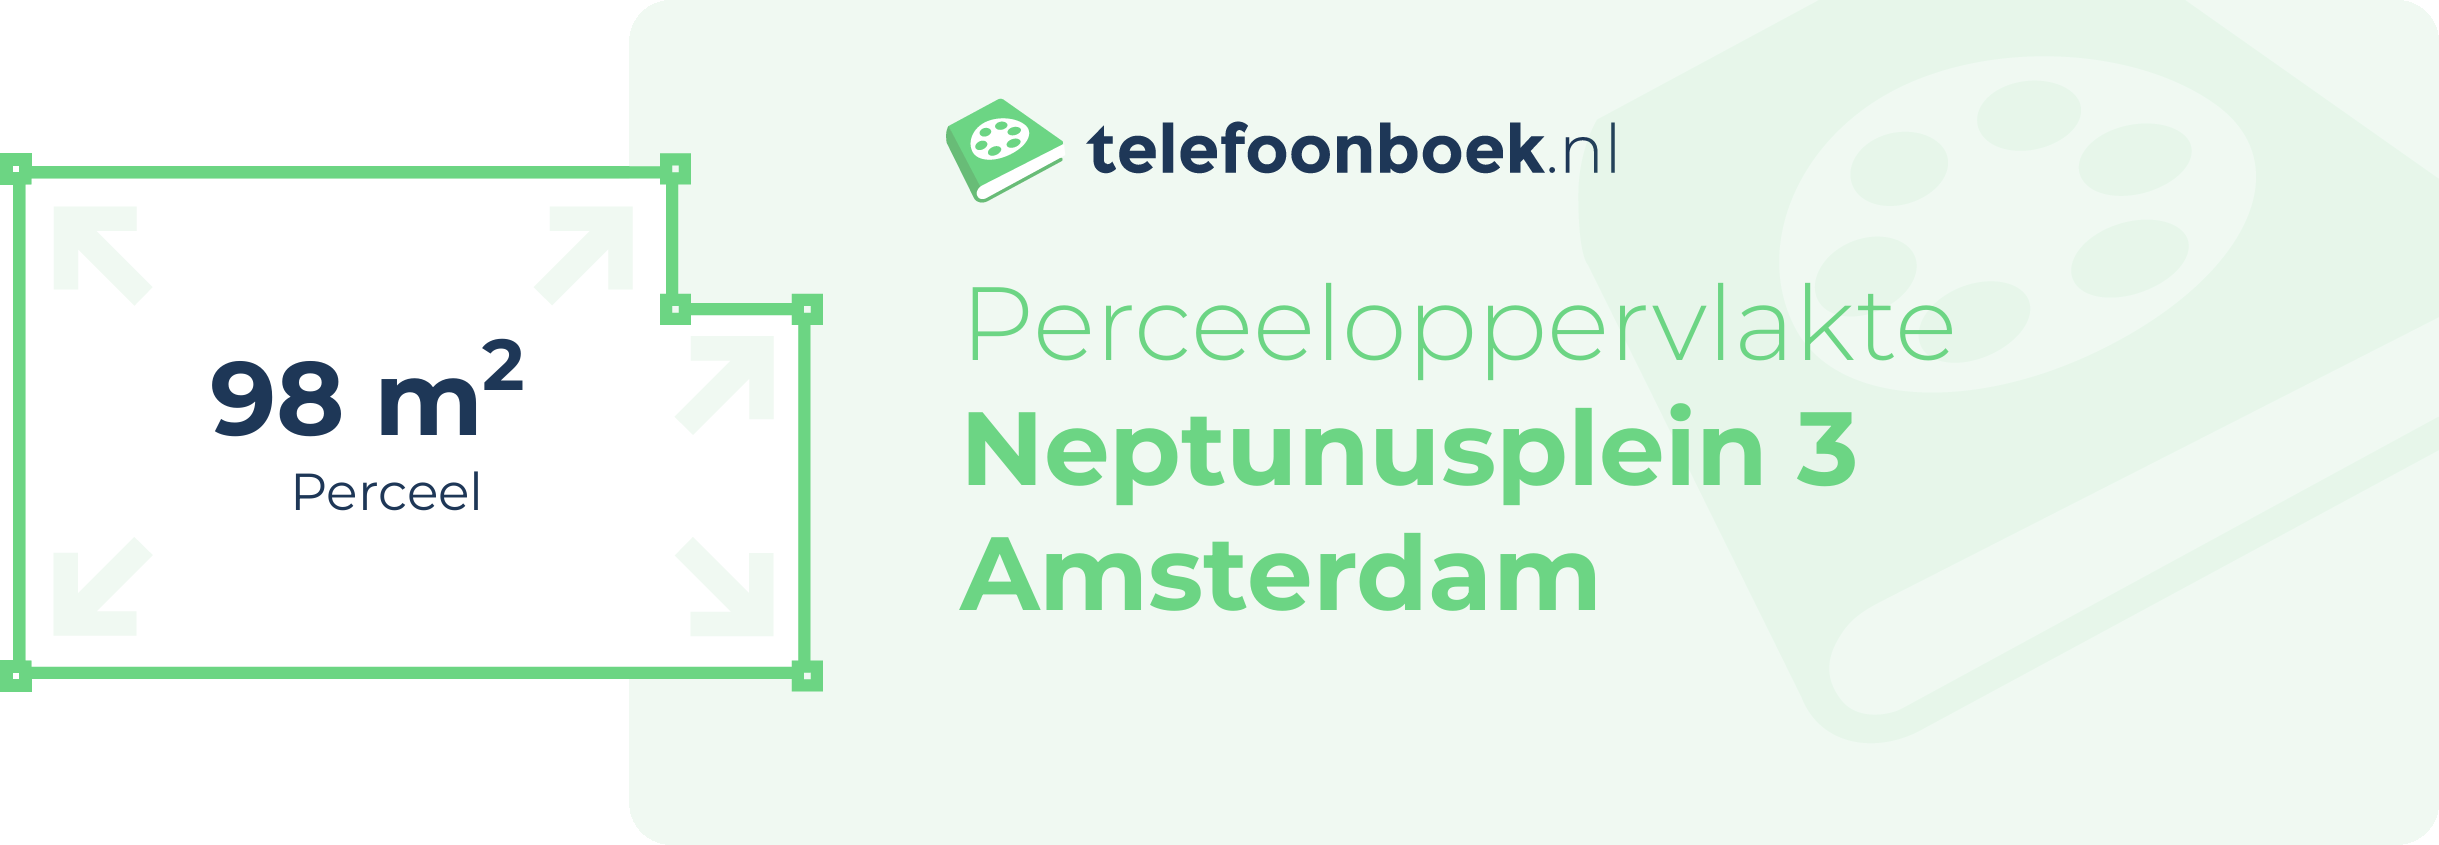 Perceeloppervlakte Neptunusplein 3 Amsterdam